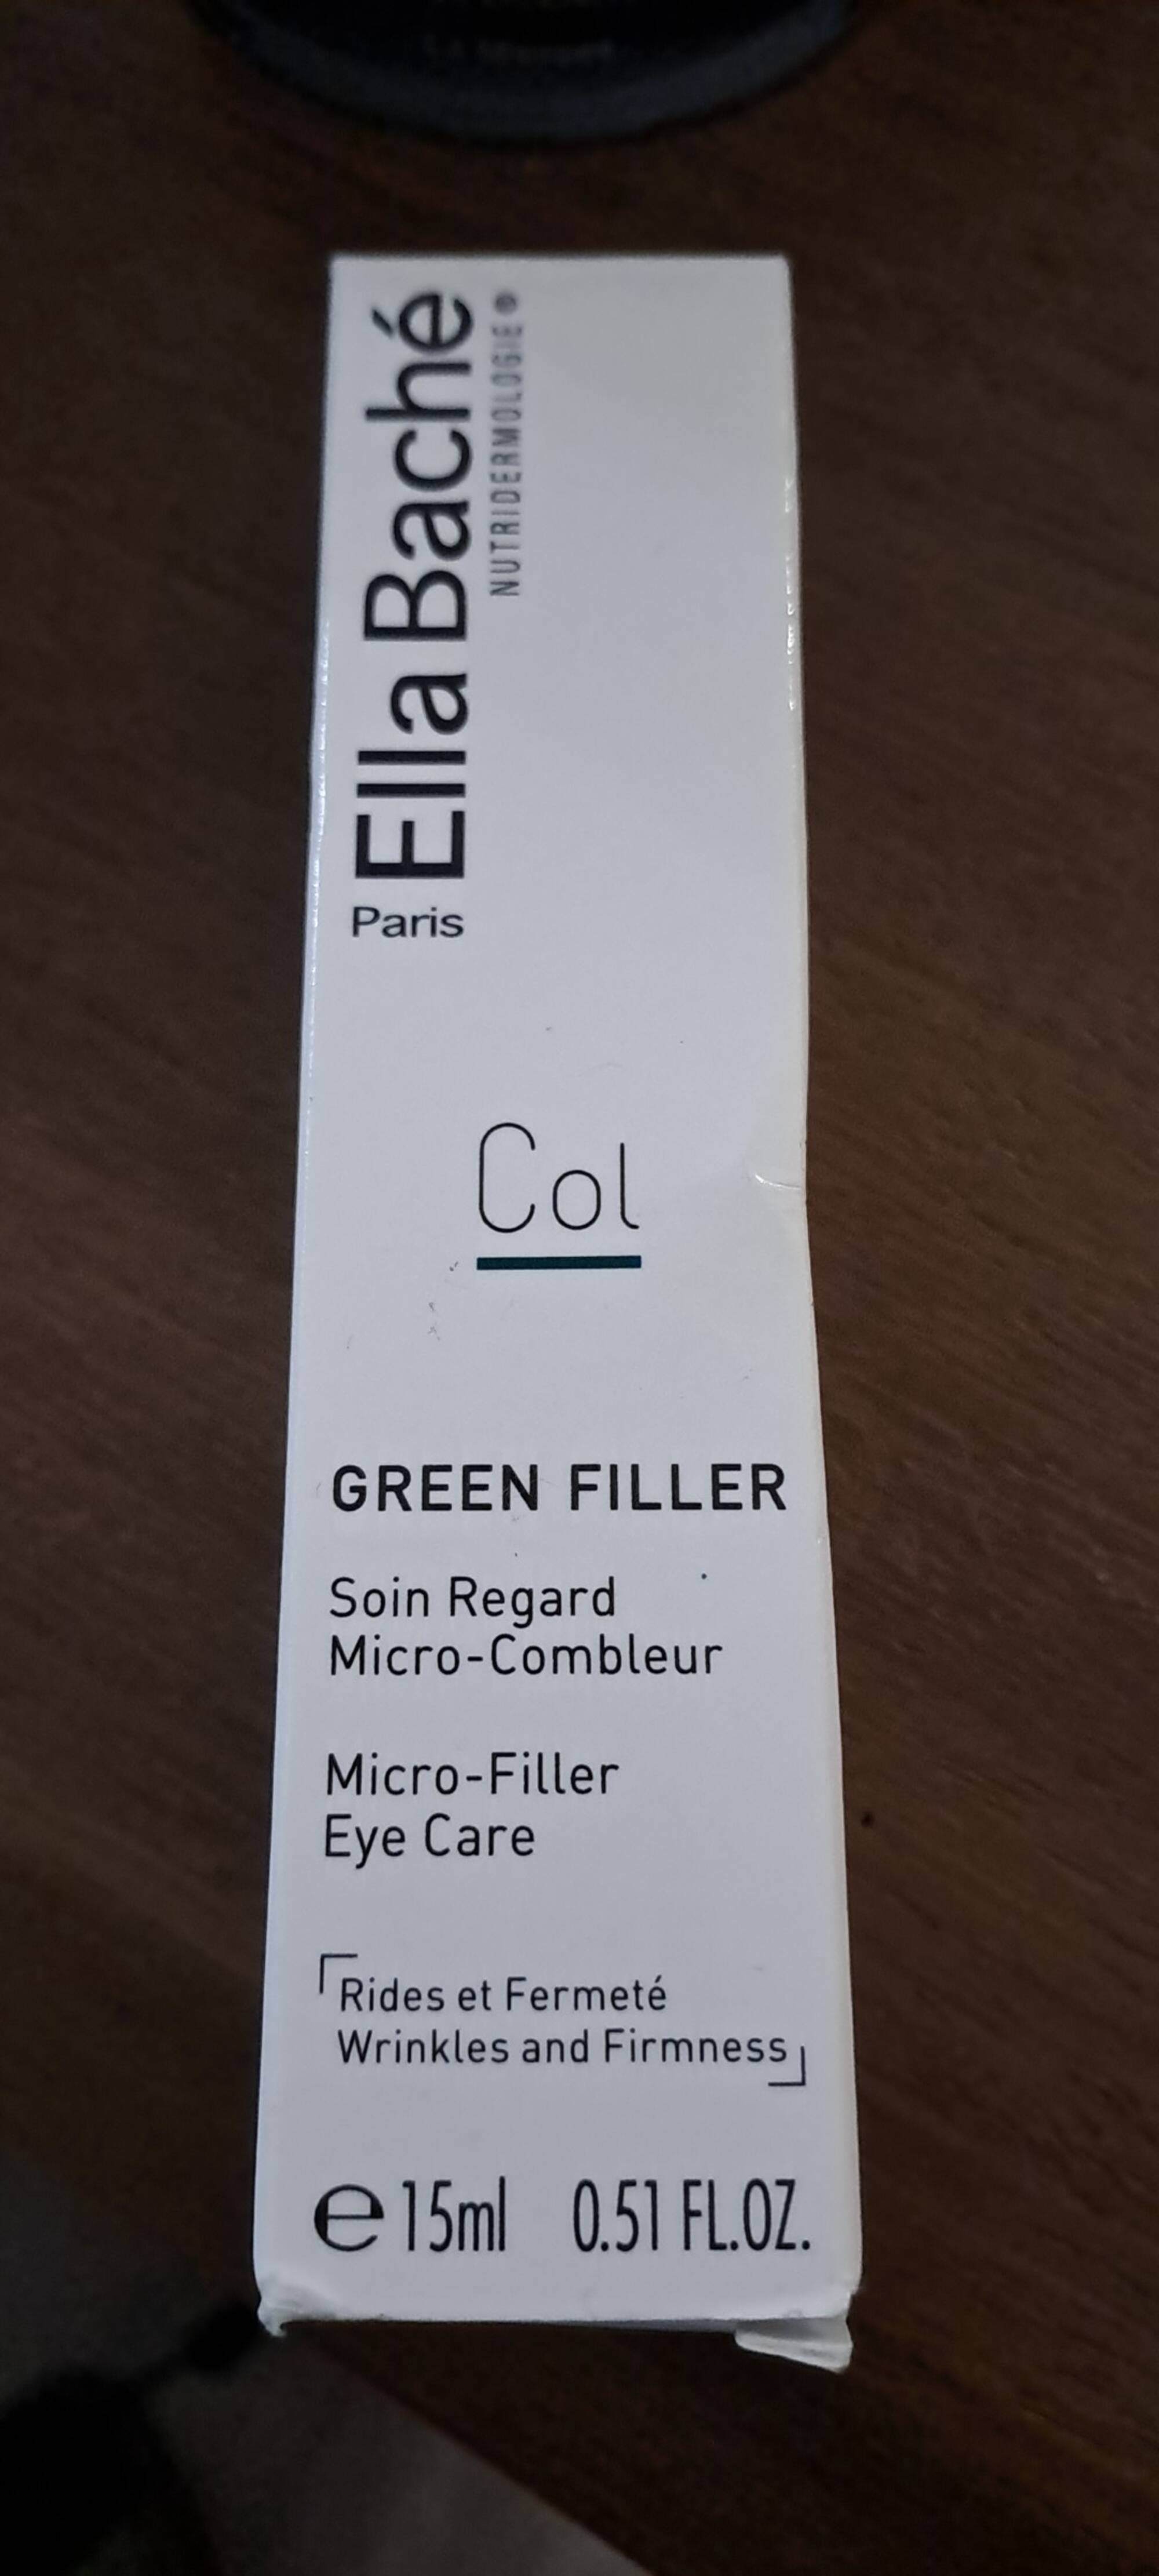 ELLA BACHE - Col green filler - Soin regard micro-combleur